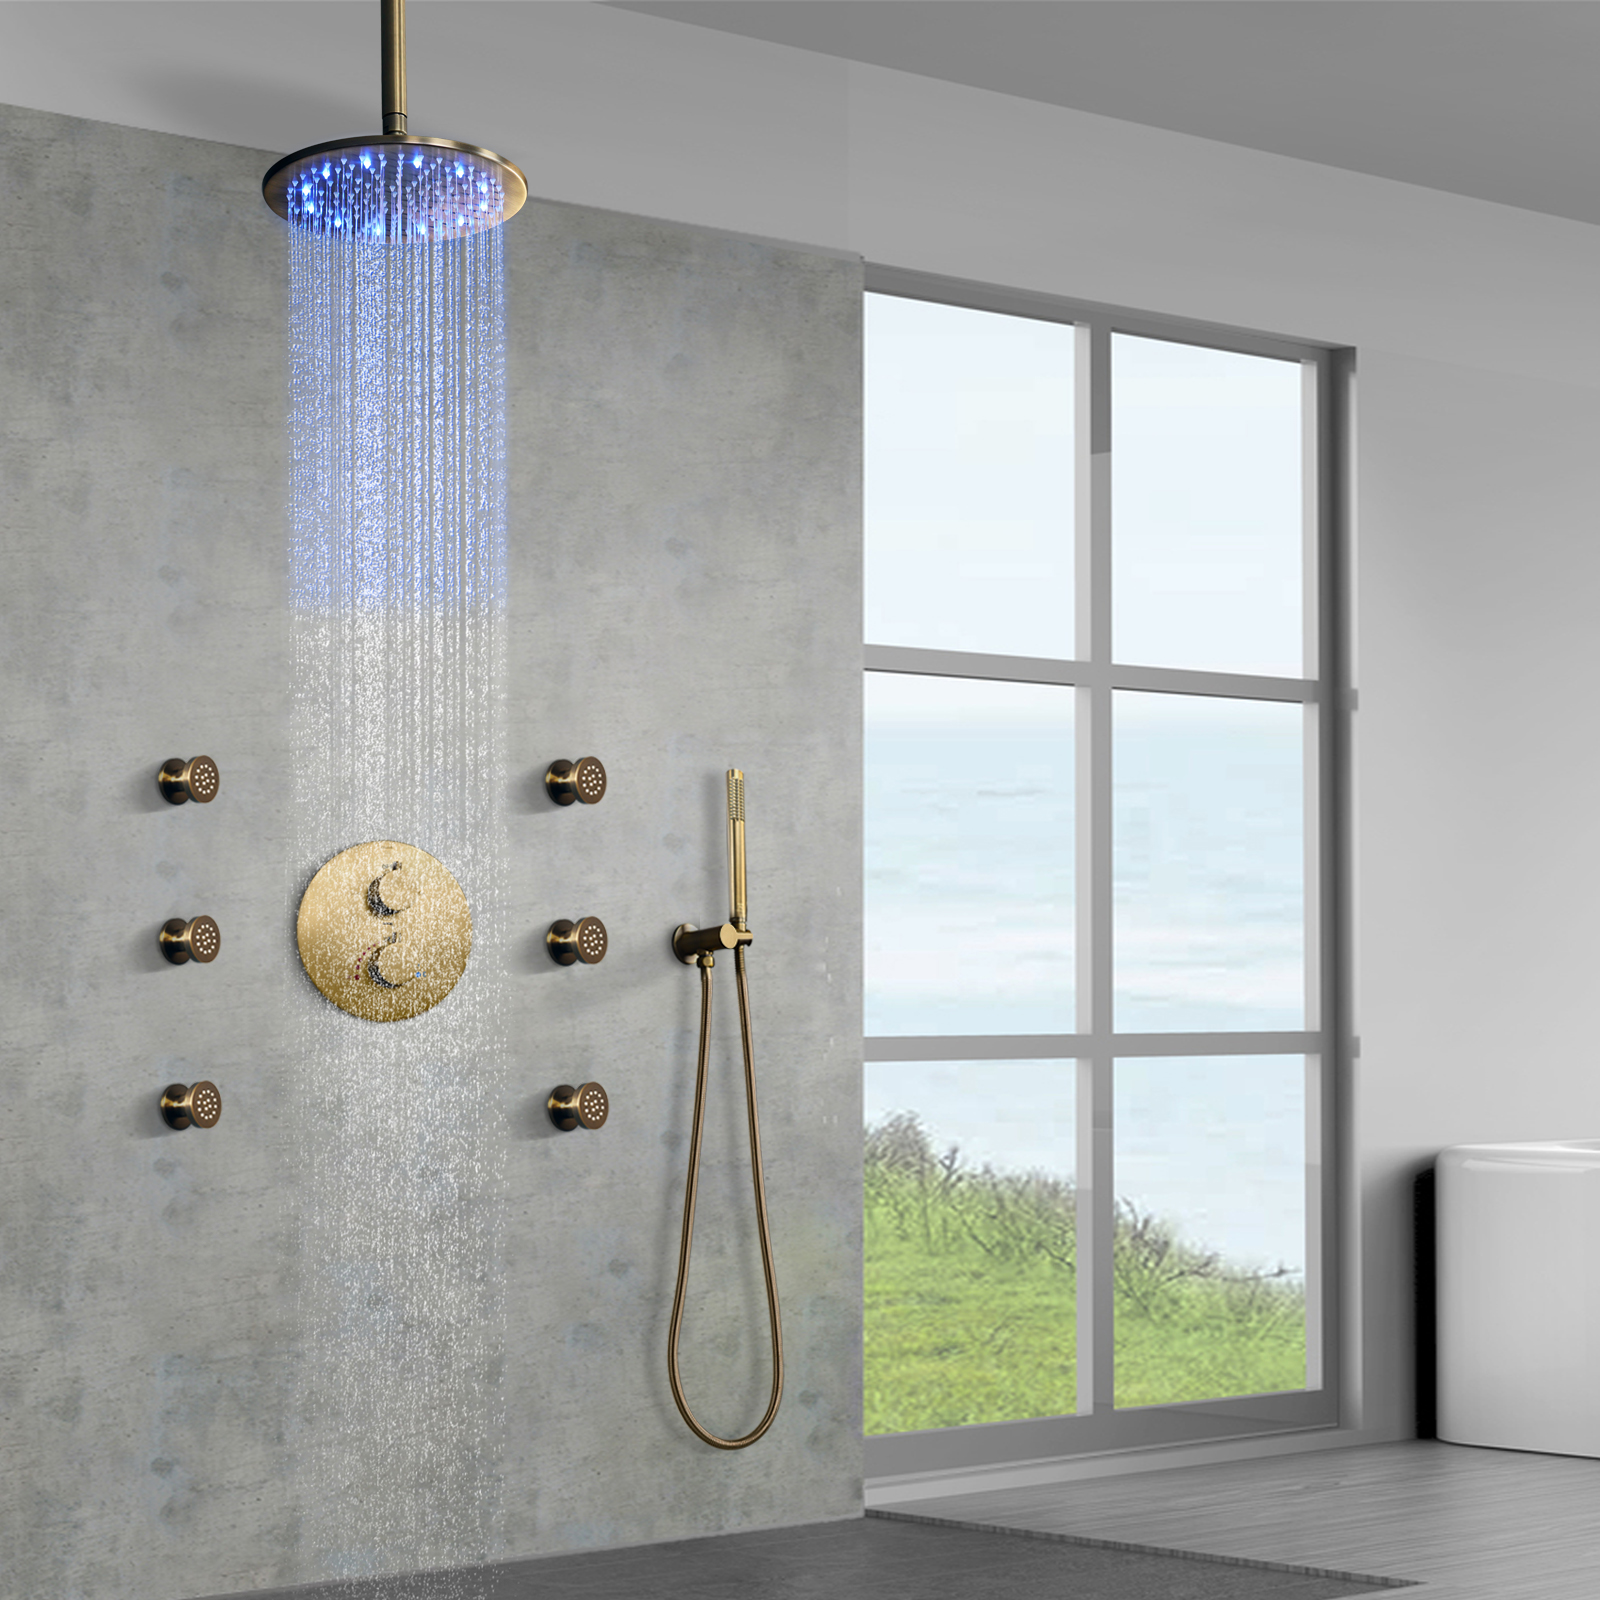 Ilumine sua experiência de banho com chuveiros de LED